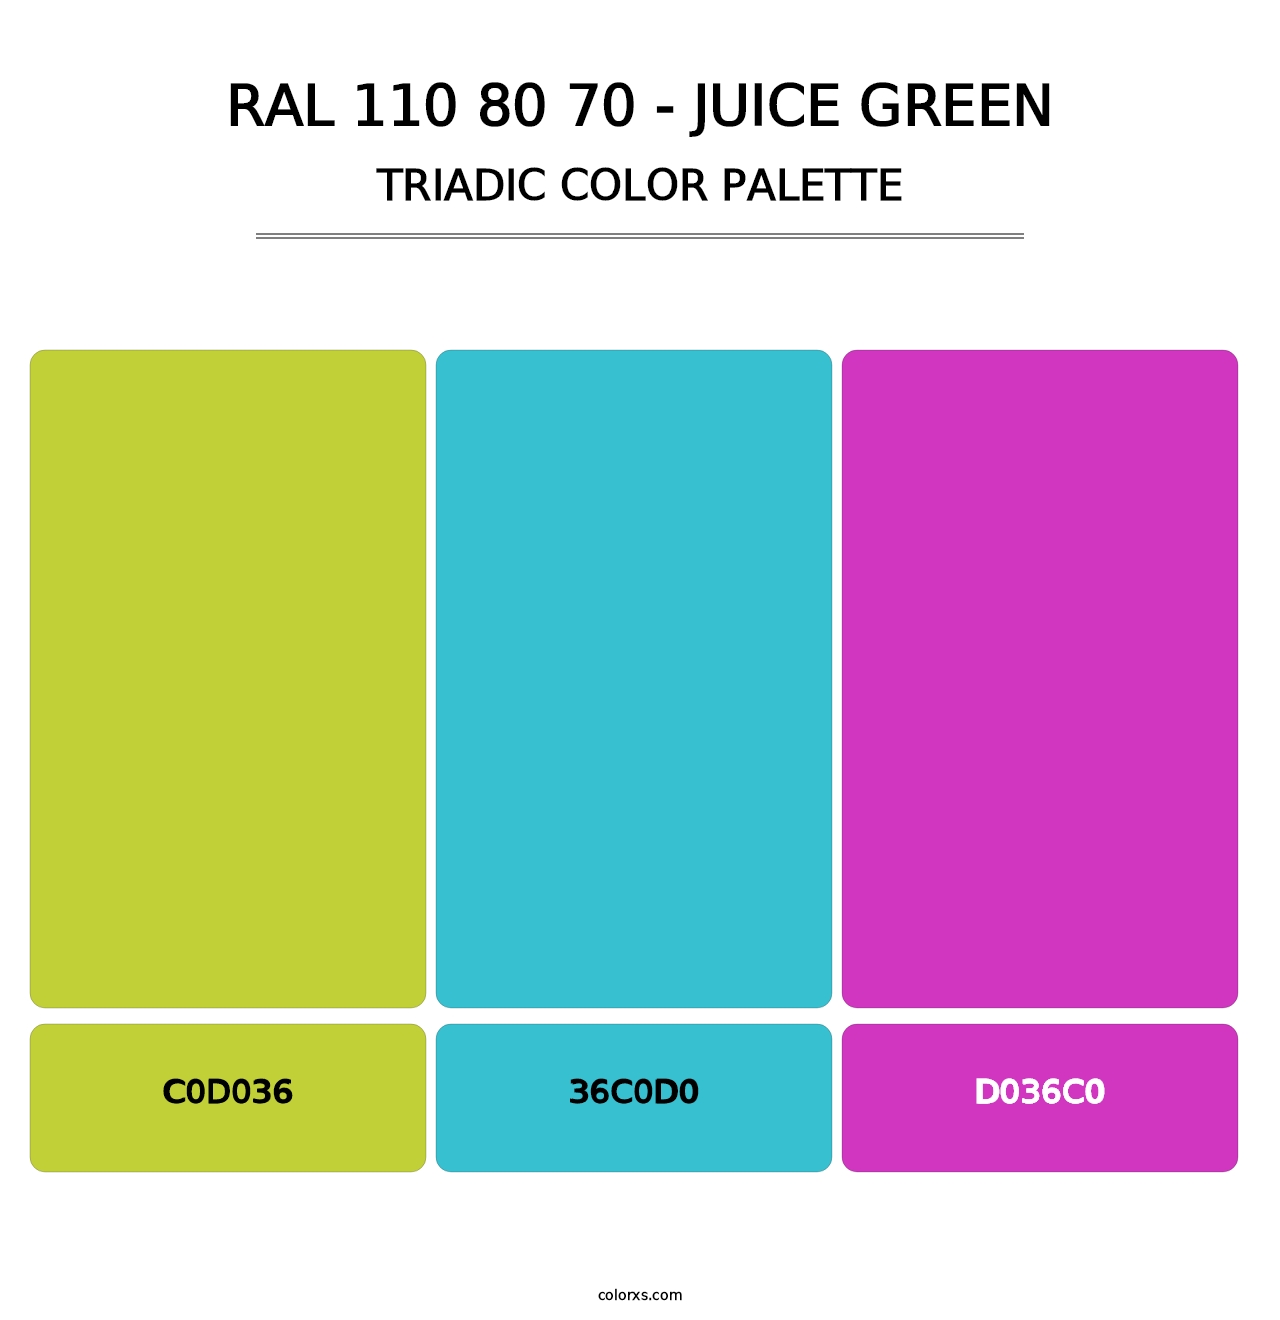 RAL 110 80 70 - Juice Green - Triadic Color Palette